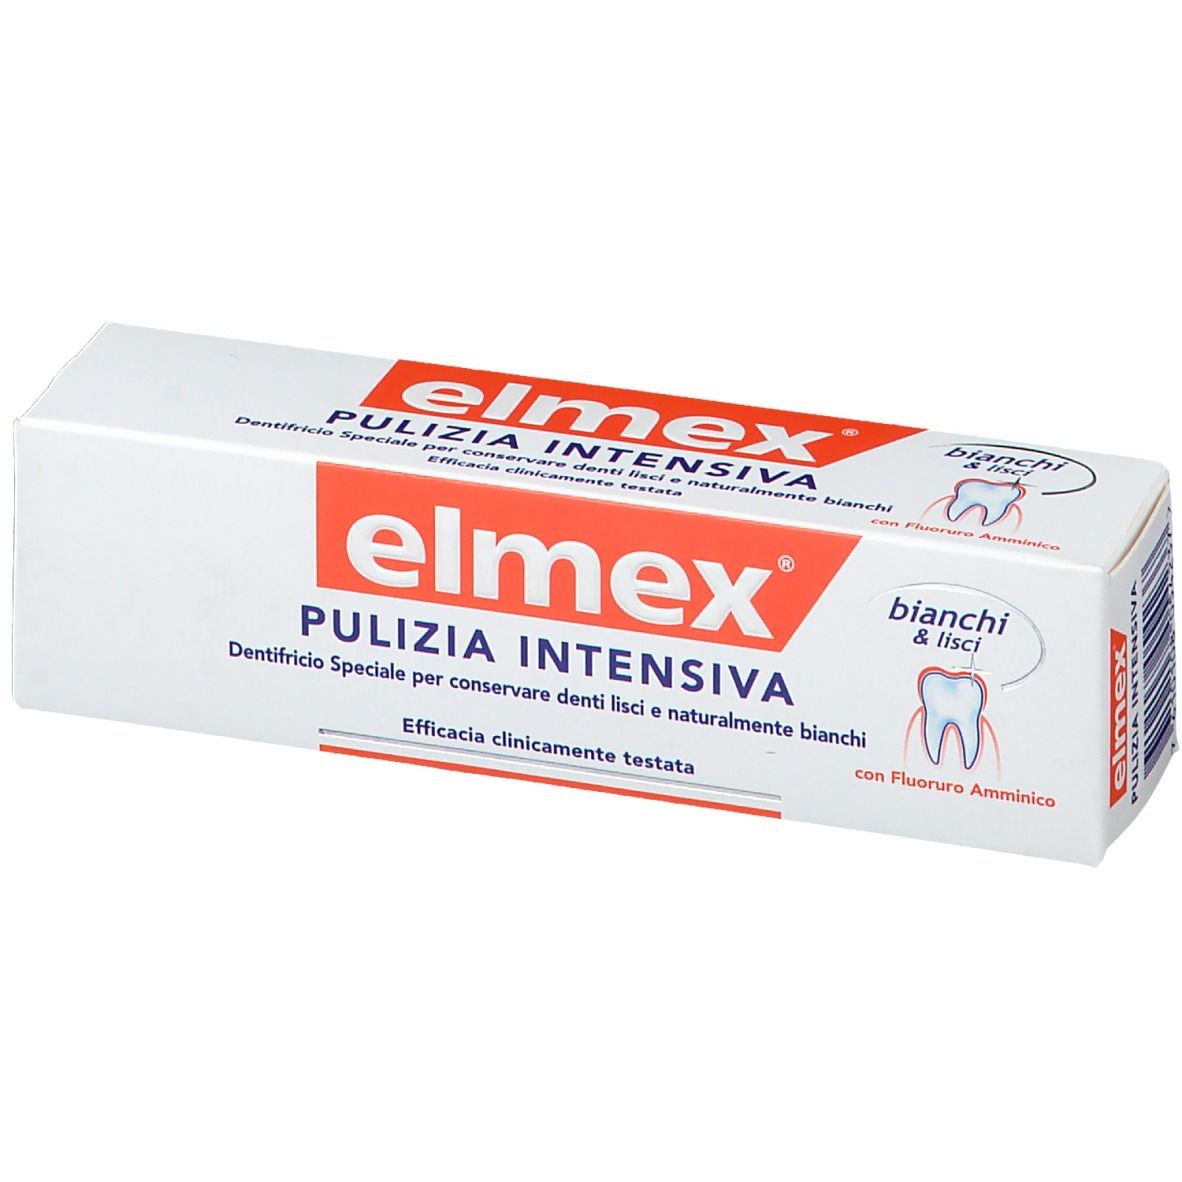 Elmex® Pulizia Intensiva